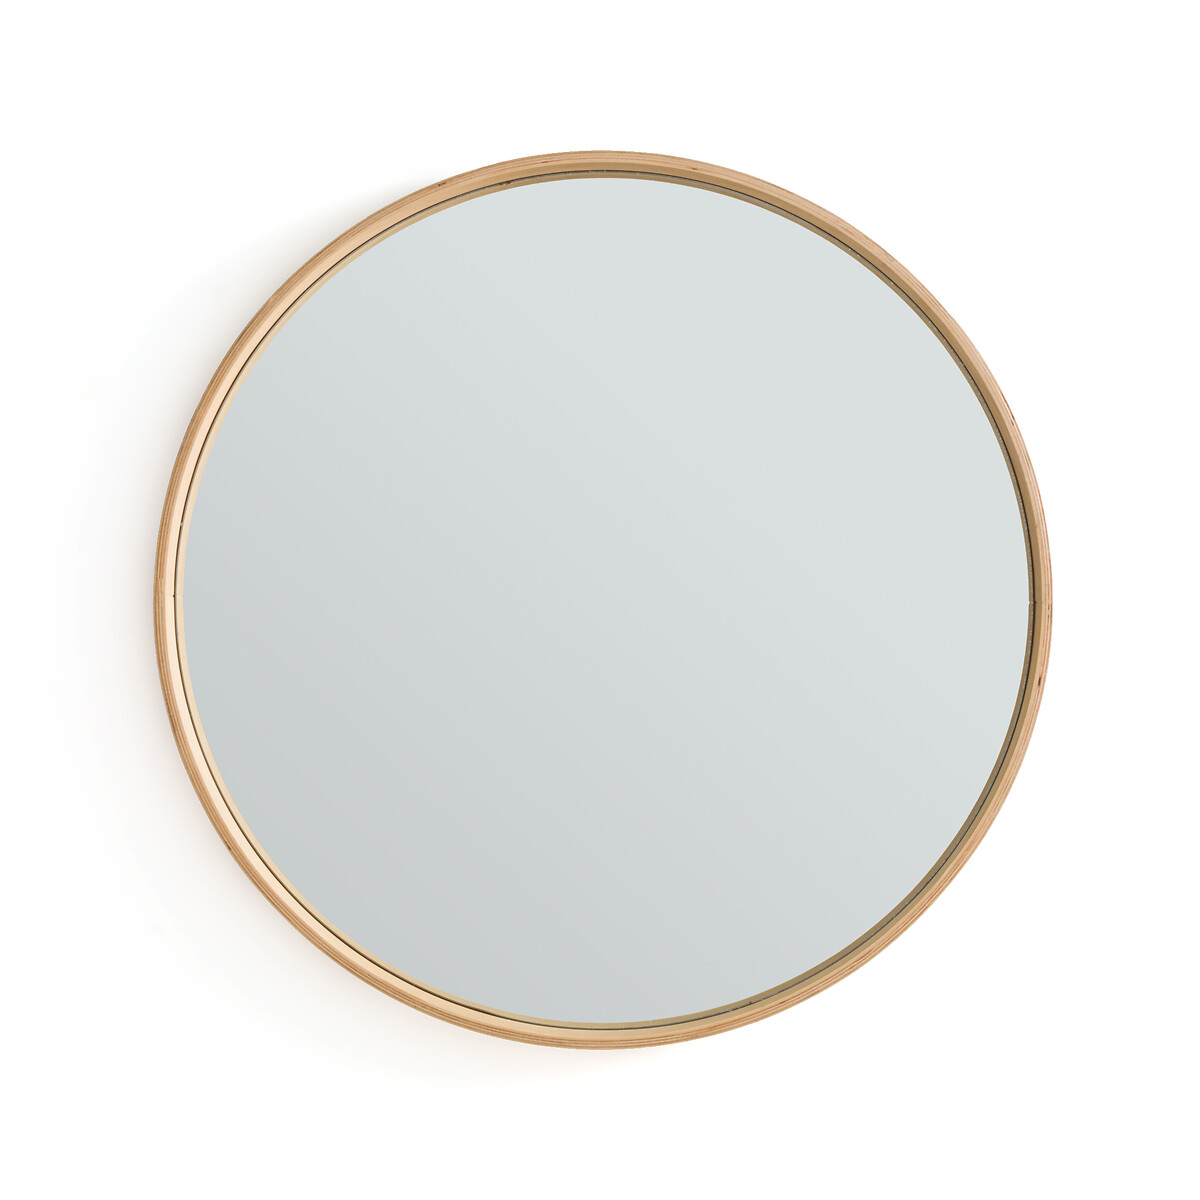 Зеркало круглое из дуба 80 см Alaria единый размер каштановый зеркало laredoute зеркало круглое из дуба 35 см alaria единый размер каштановый